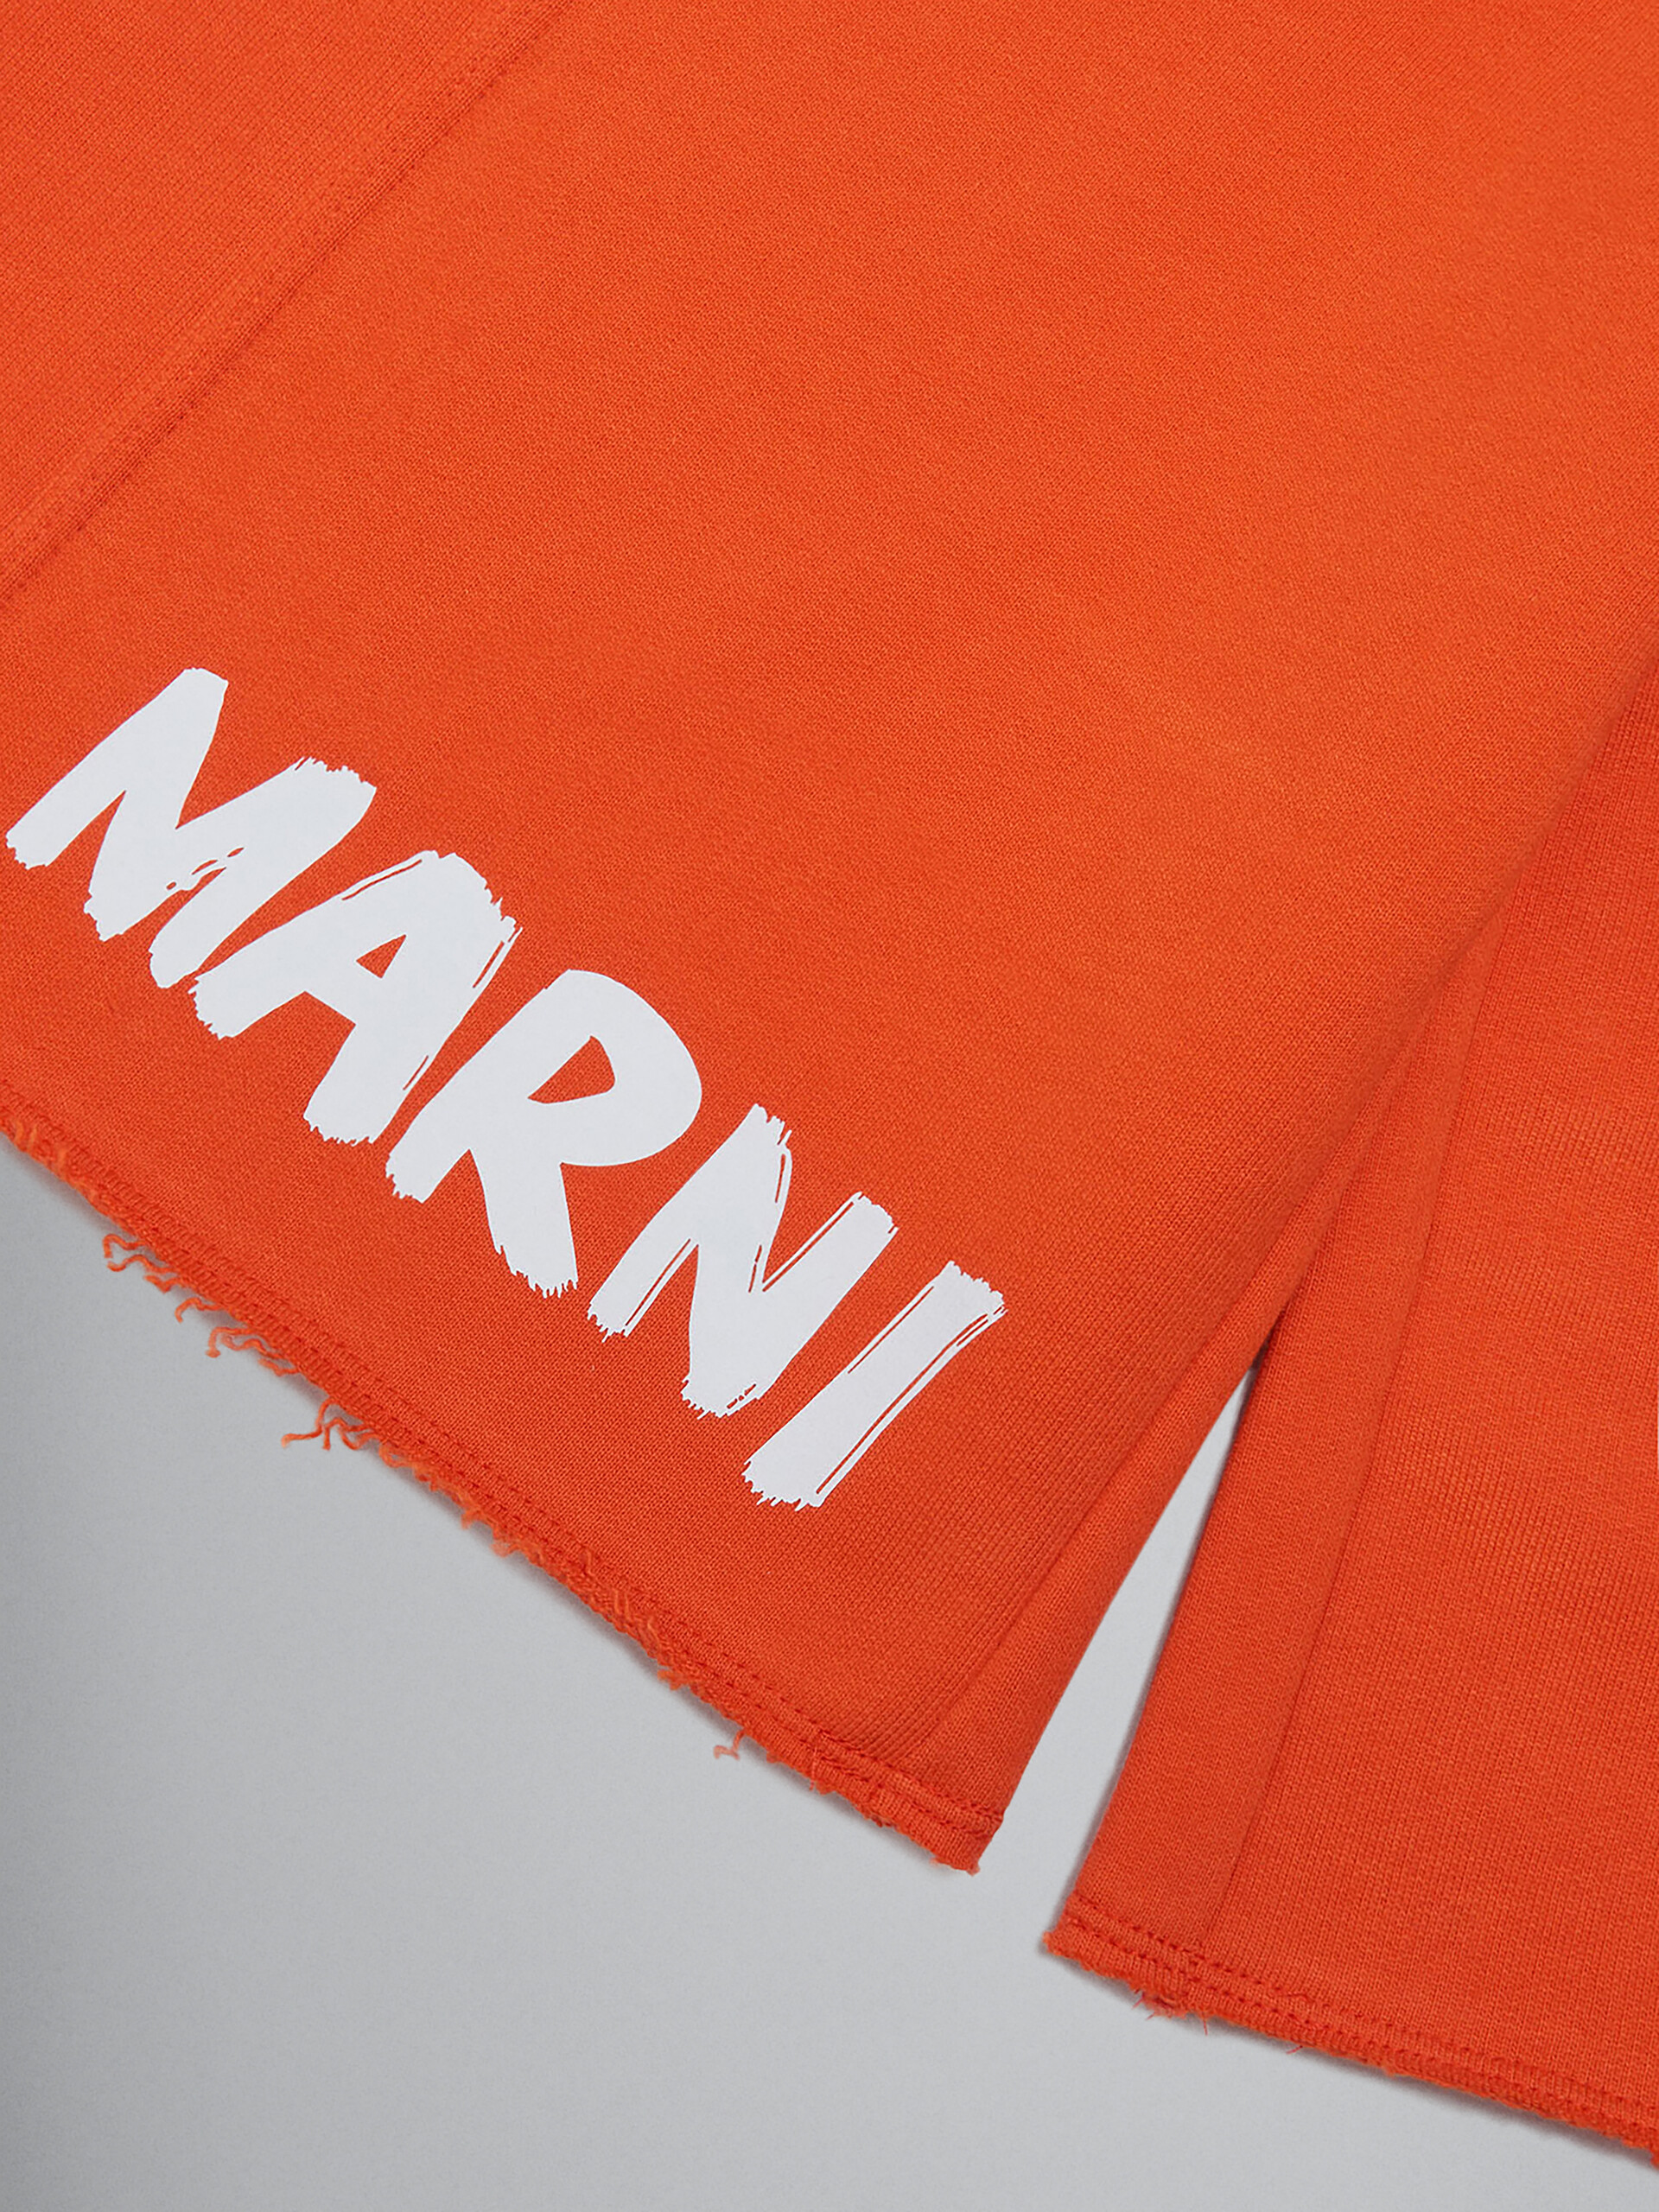 Orange fleece shorts with Brush logo - Pants - Image 3